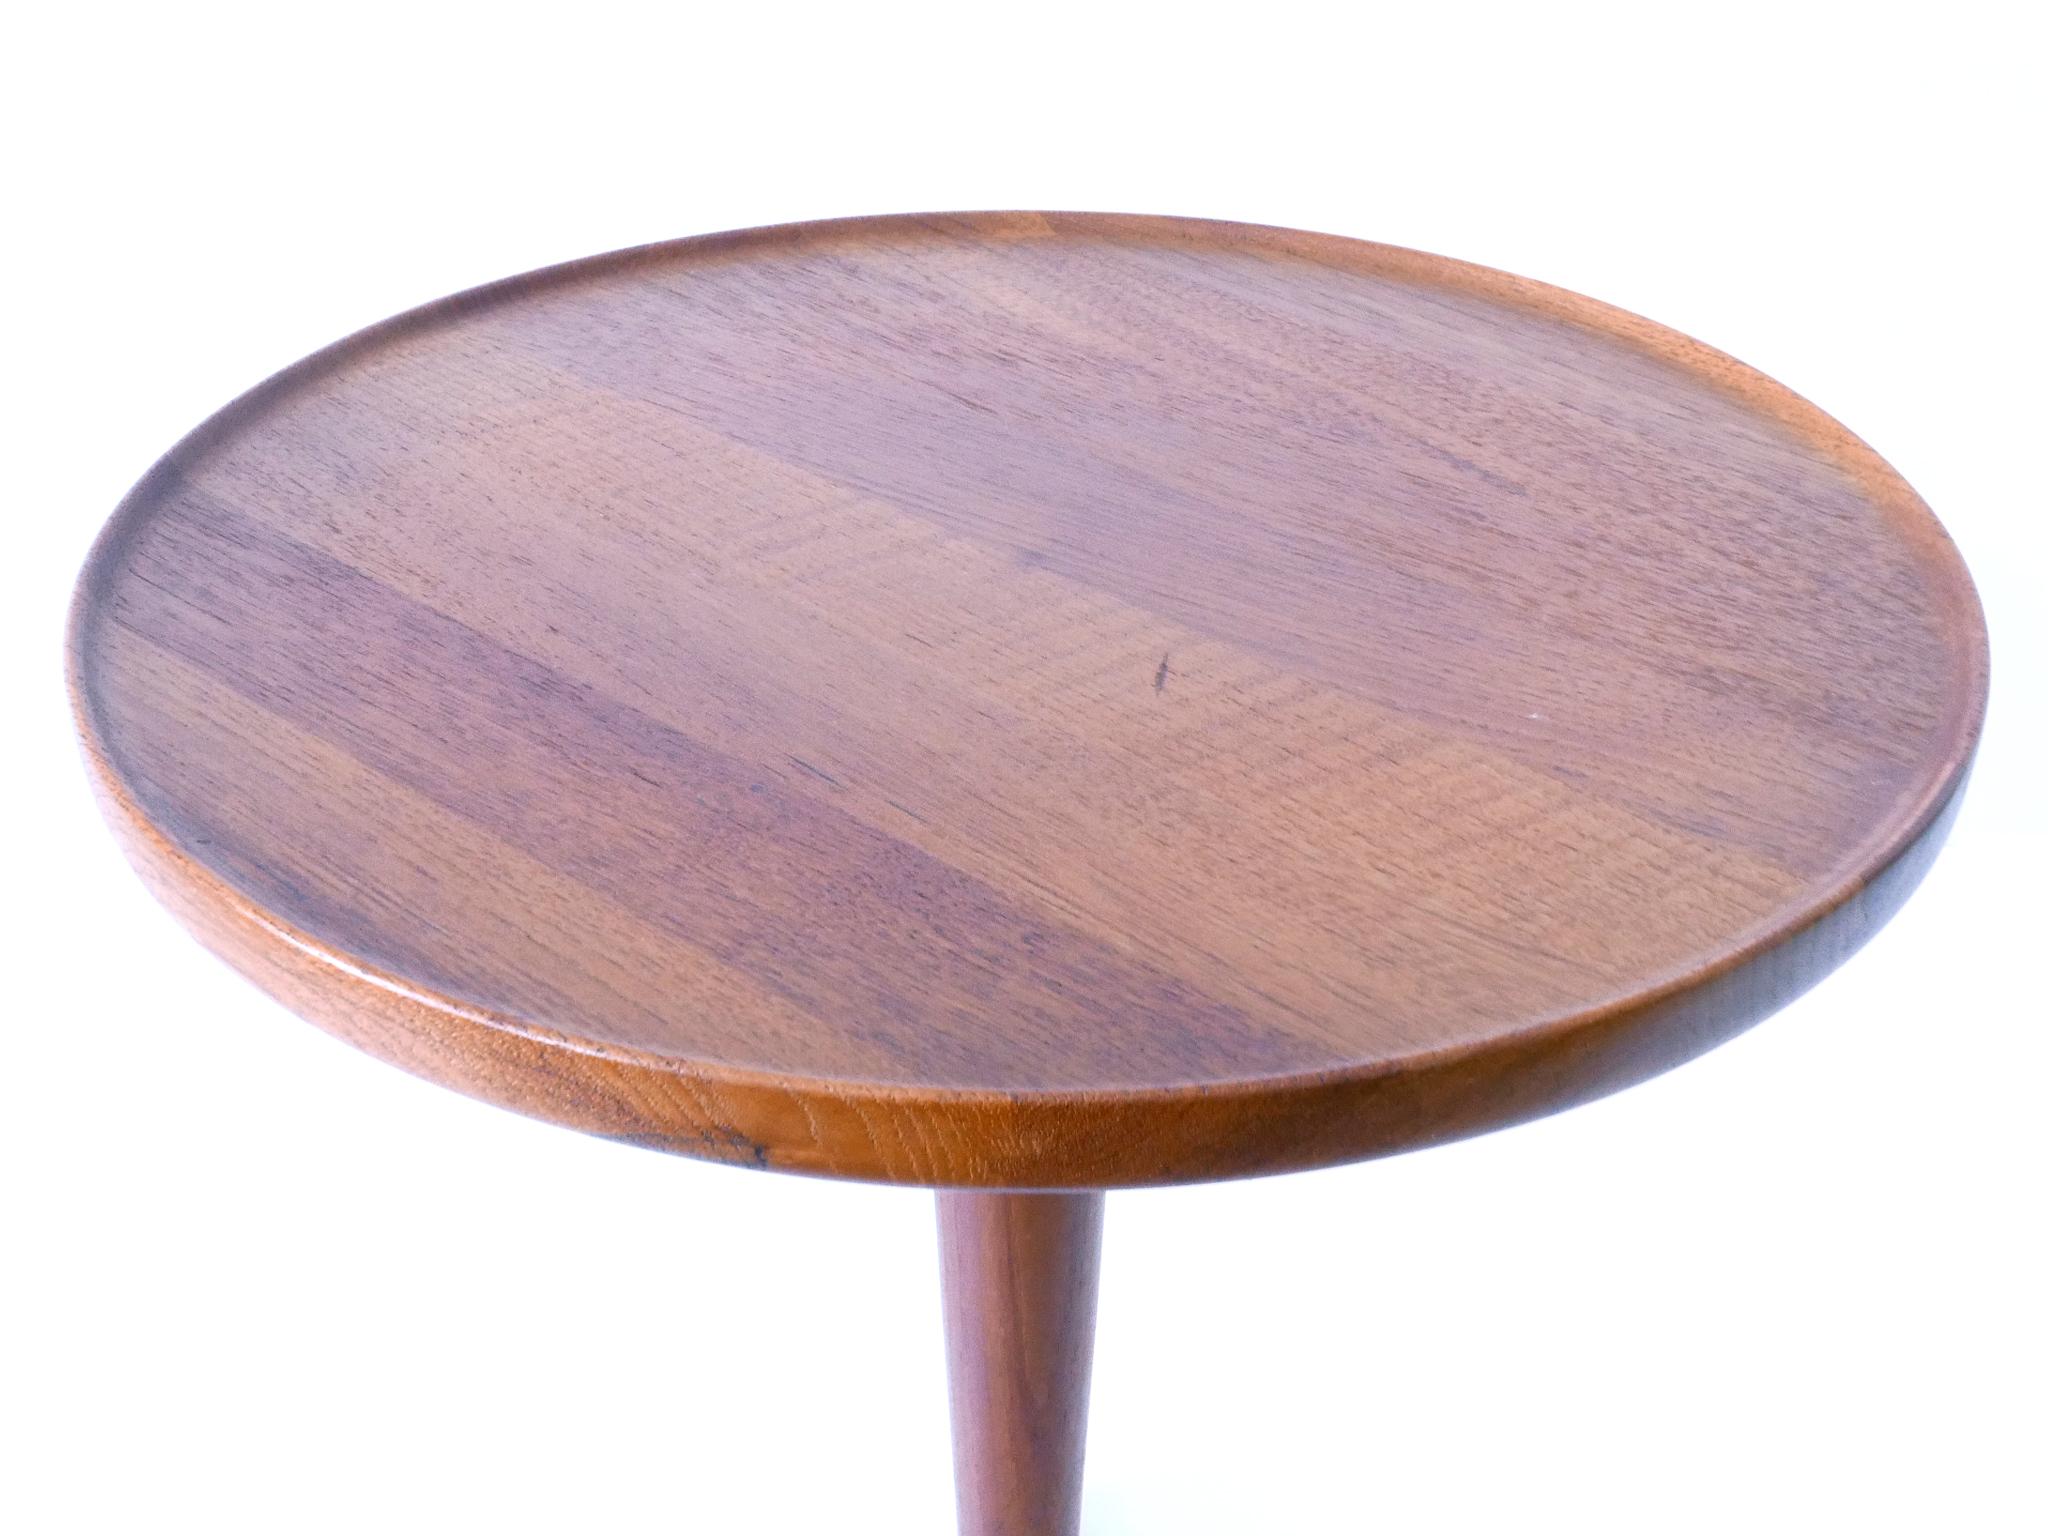 Elegant Mid-Century Modern Teak Side Table by Hans C. Andersen for Artek 1960s For Sale 8